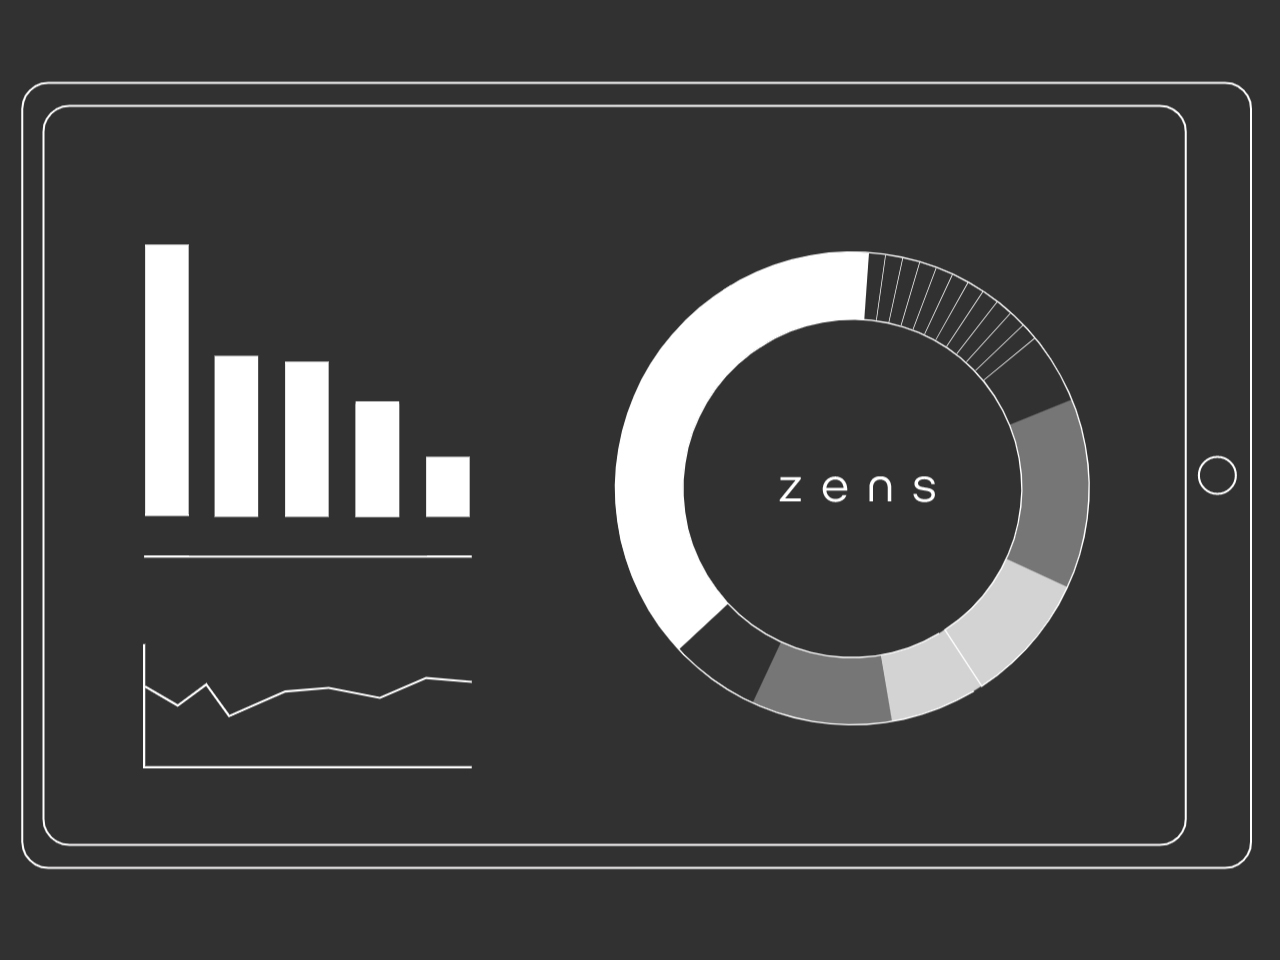 Details of Zens Smart office functions